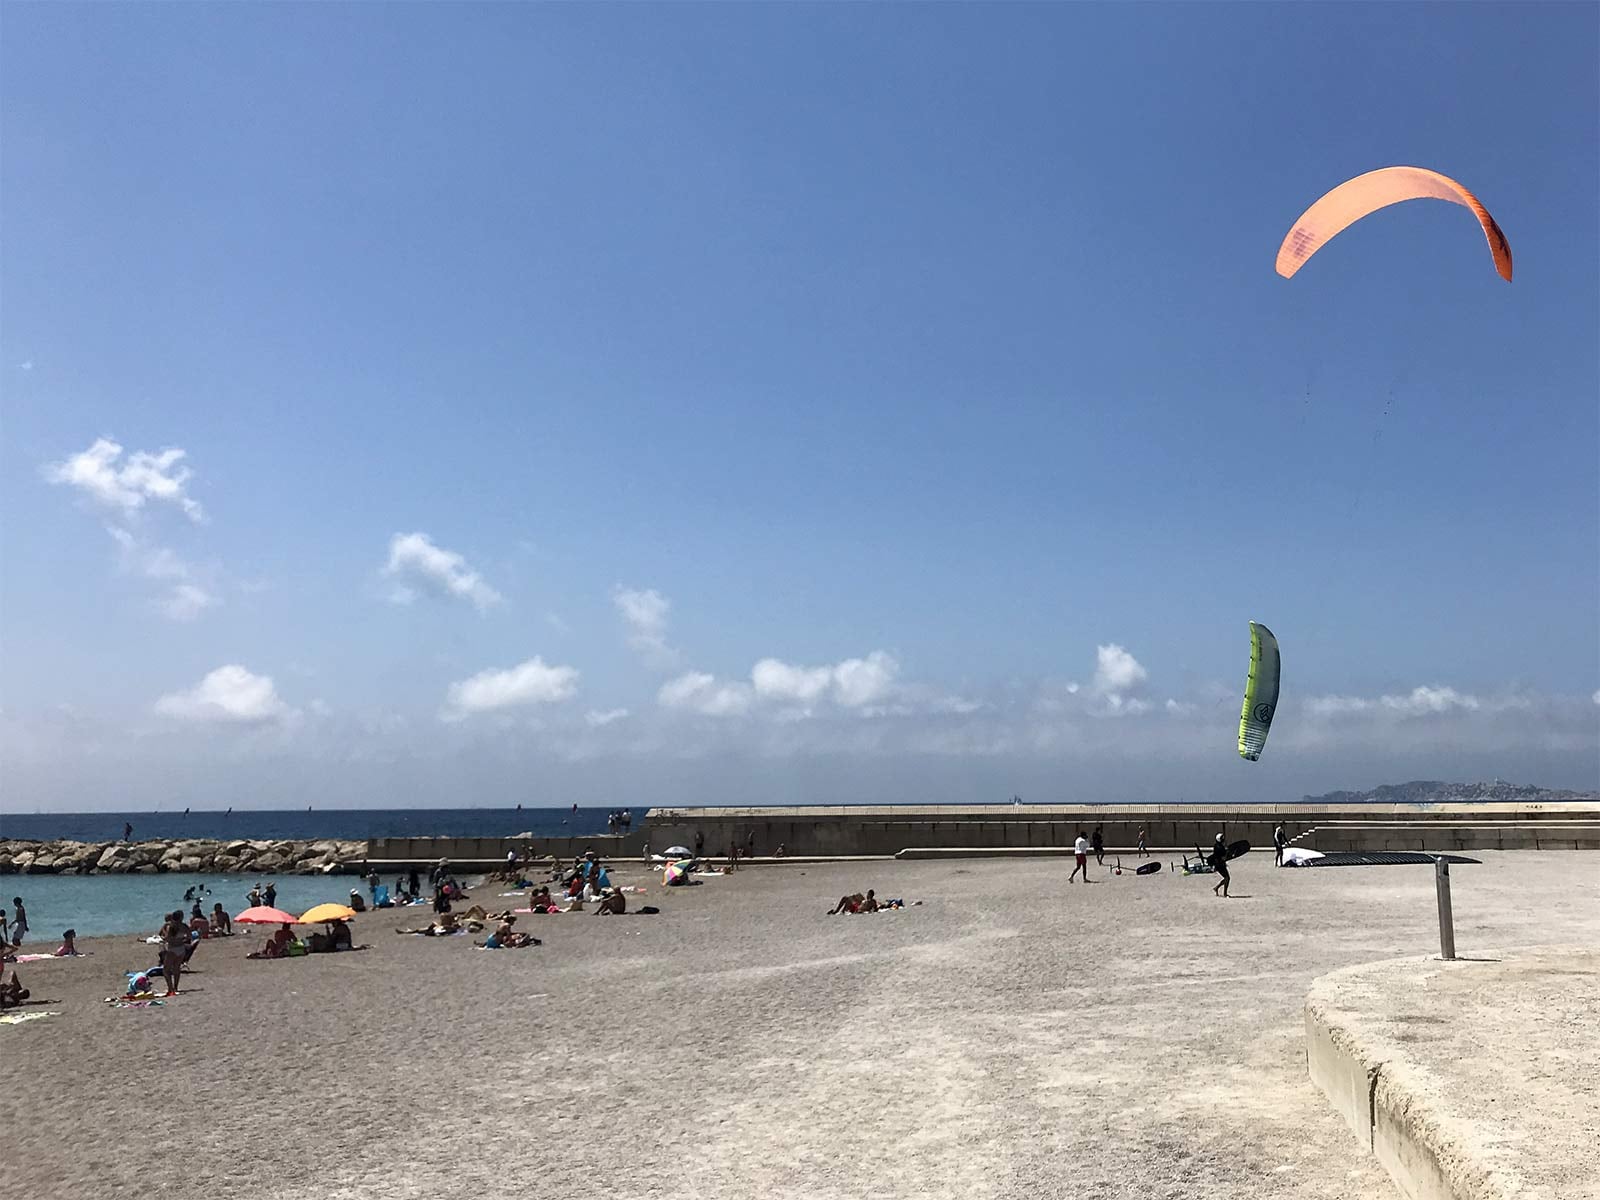 Panique sur la plage kite surfs